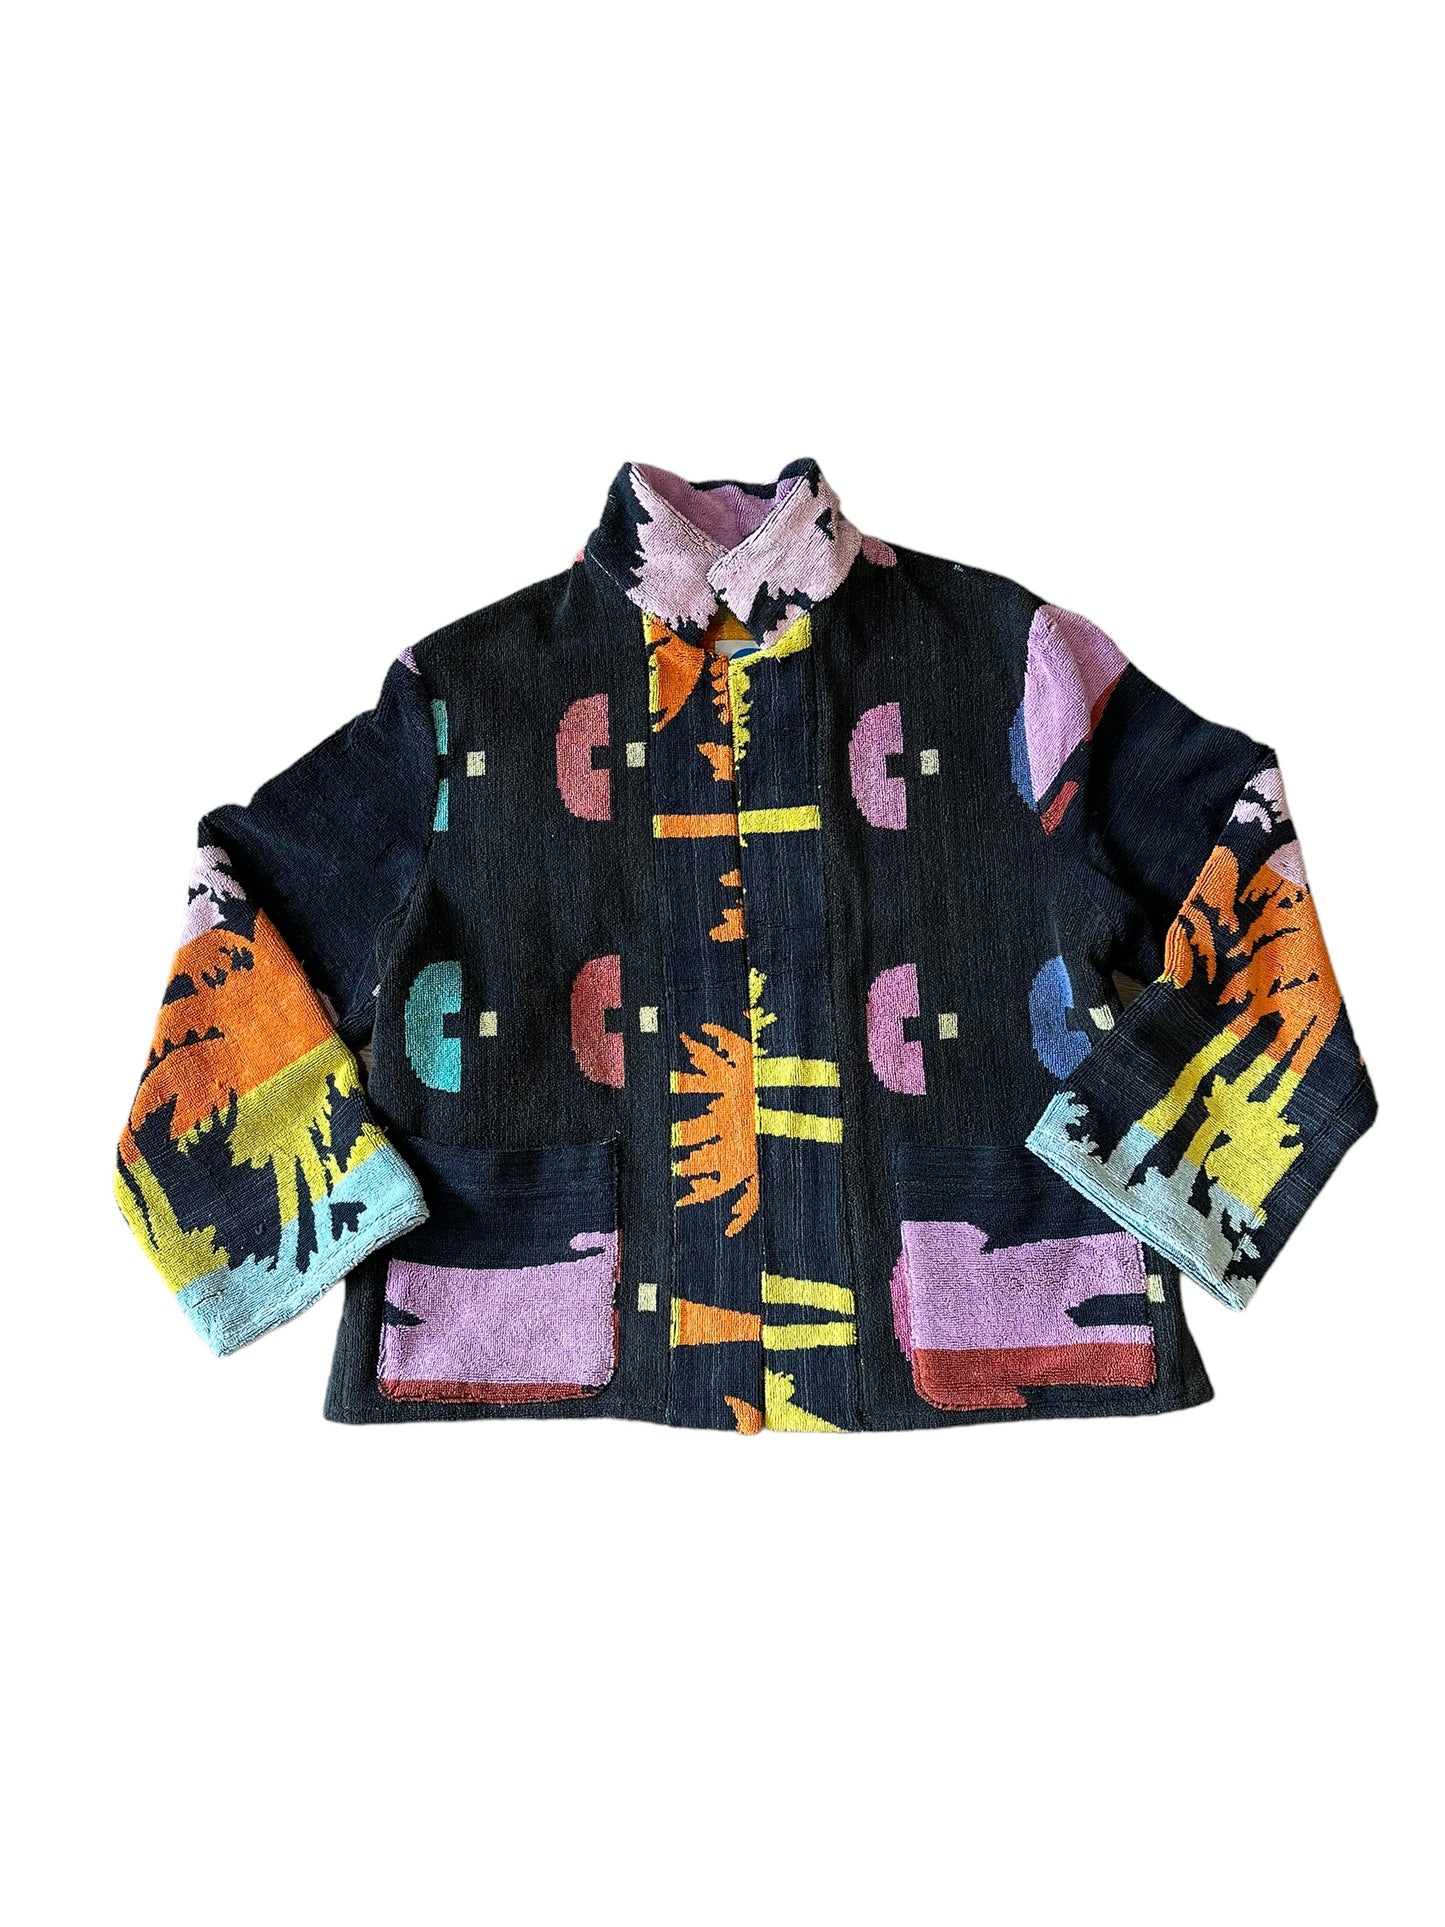 Regazza jacket in Miami Vice